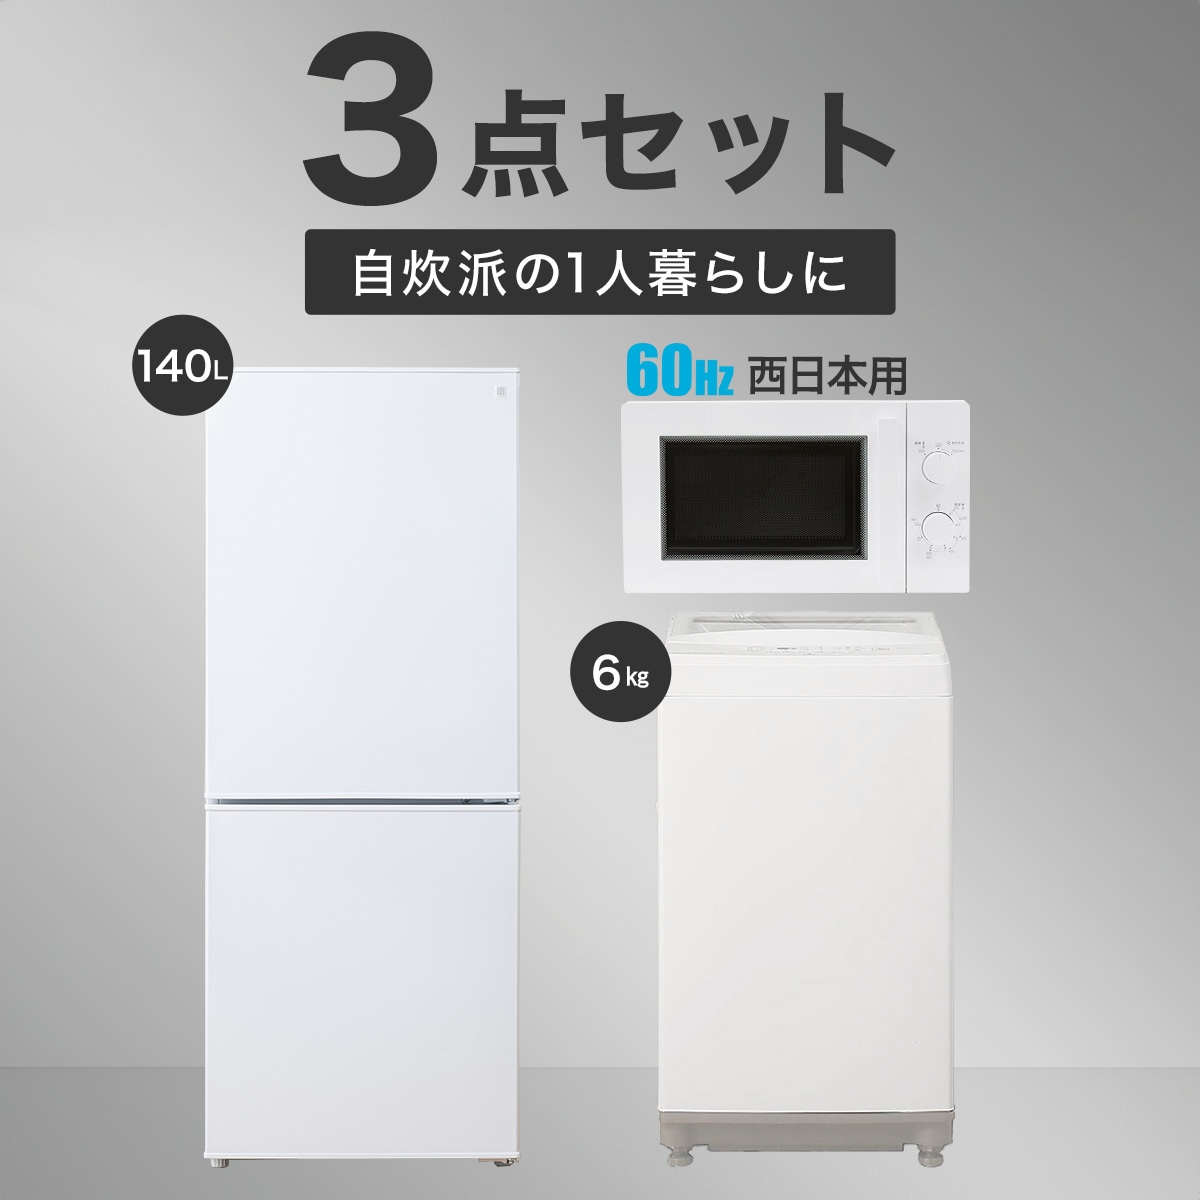 【家電3点セット 西日本用】140L冷蔵庫+6㎏洗濯機+電子レンジ(ホワイト)